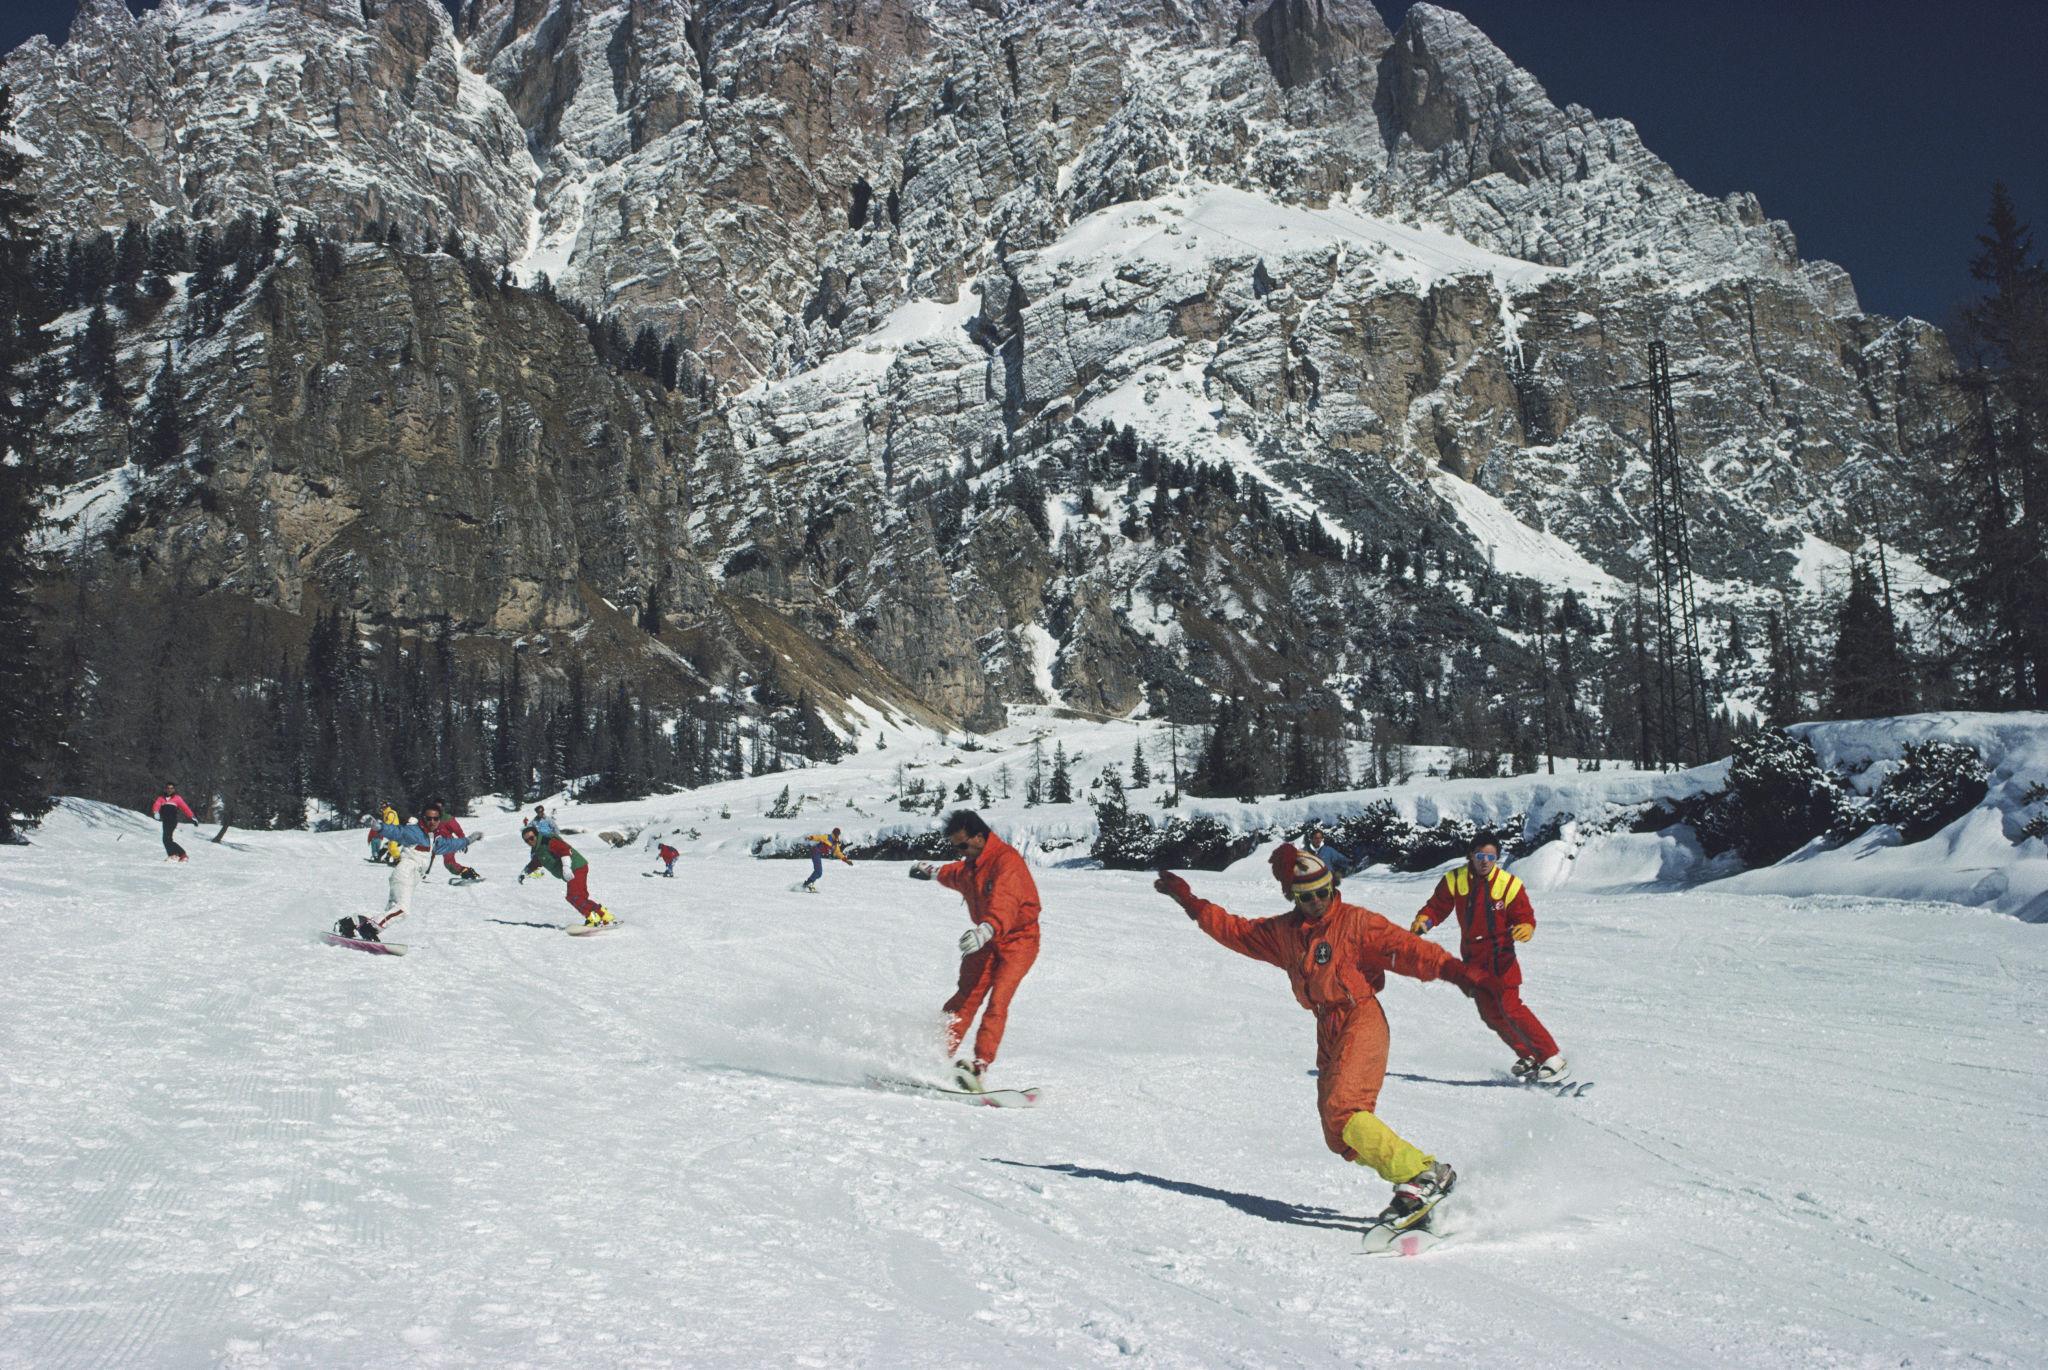 cortina d'Ampezzo" 1988 Slim Aarons Edition limitée du Domaine 

Snowboarding à Cortina d'Ampezzo, mars 1988. (Photo par Slim Aarons/Hulton Archive/Getty Images)

Produit à partir de la transparence originale
Certificat d'authenticité fourni